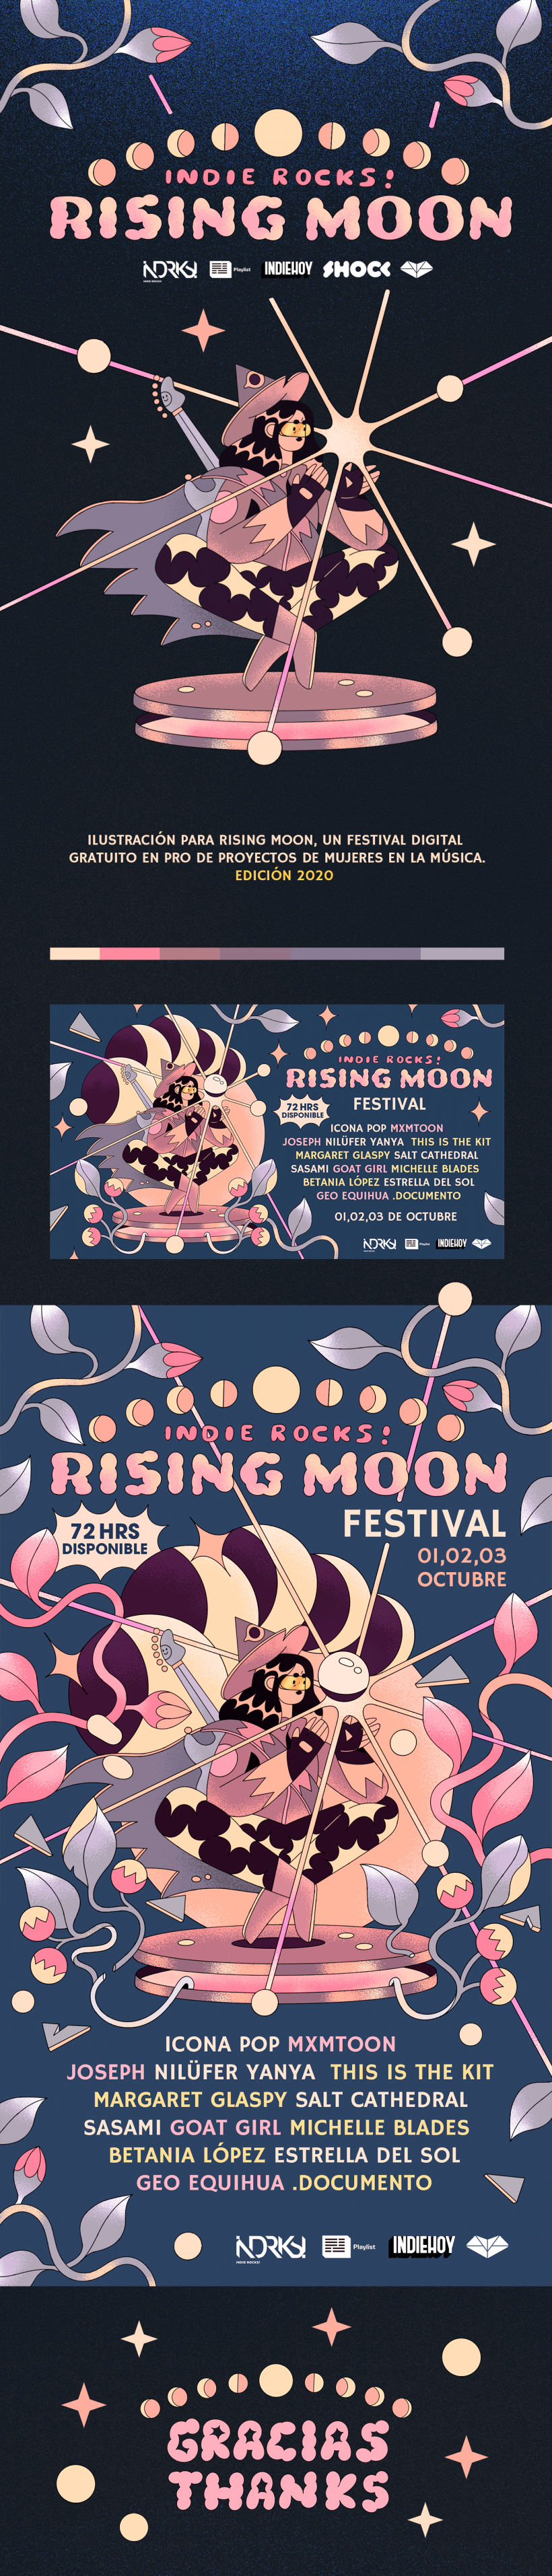 Rising Moon Festival / Indie Rocks 1